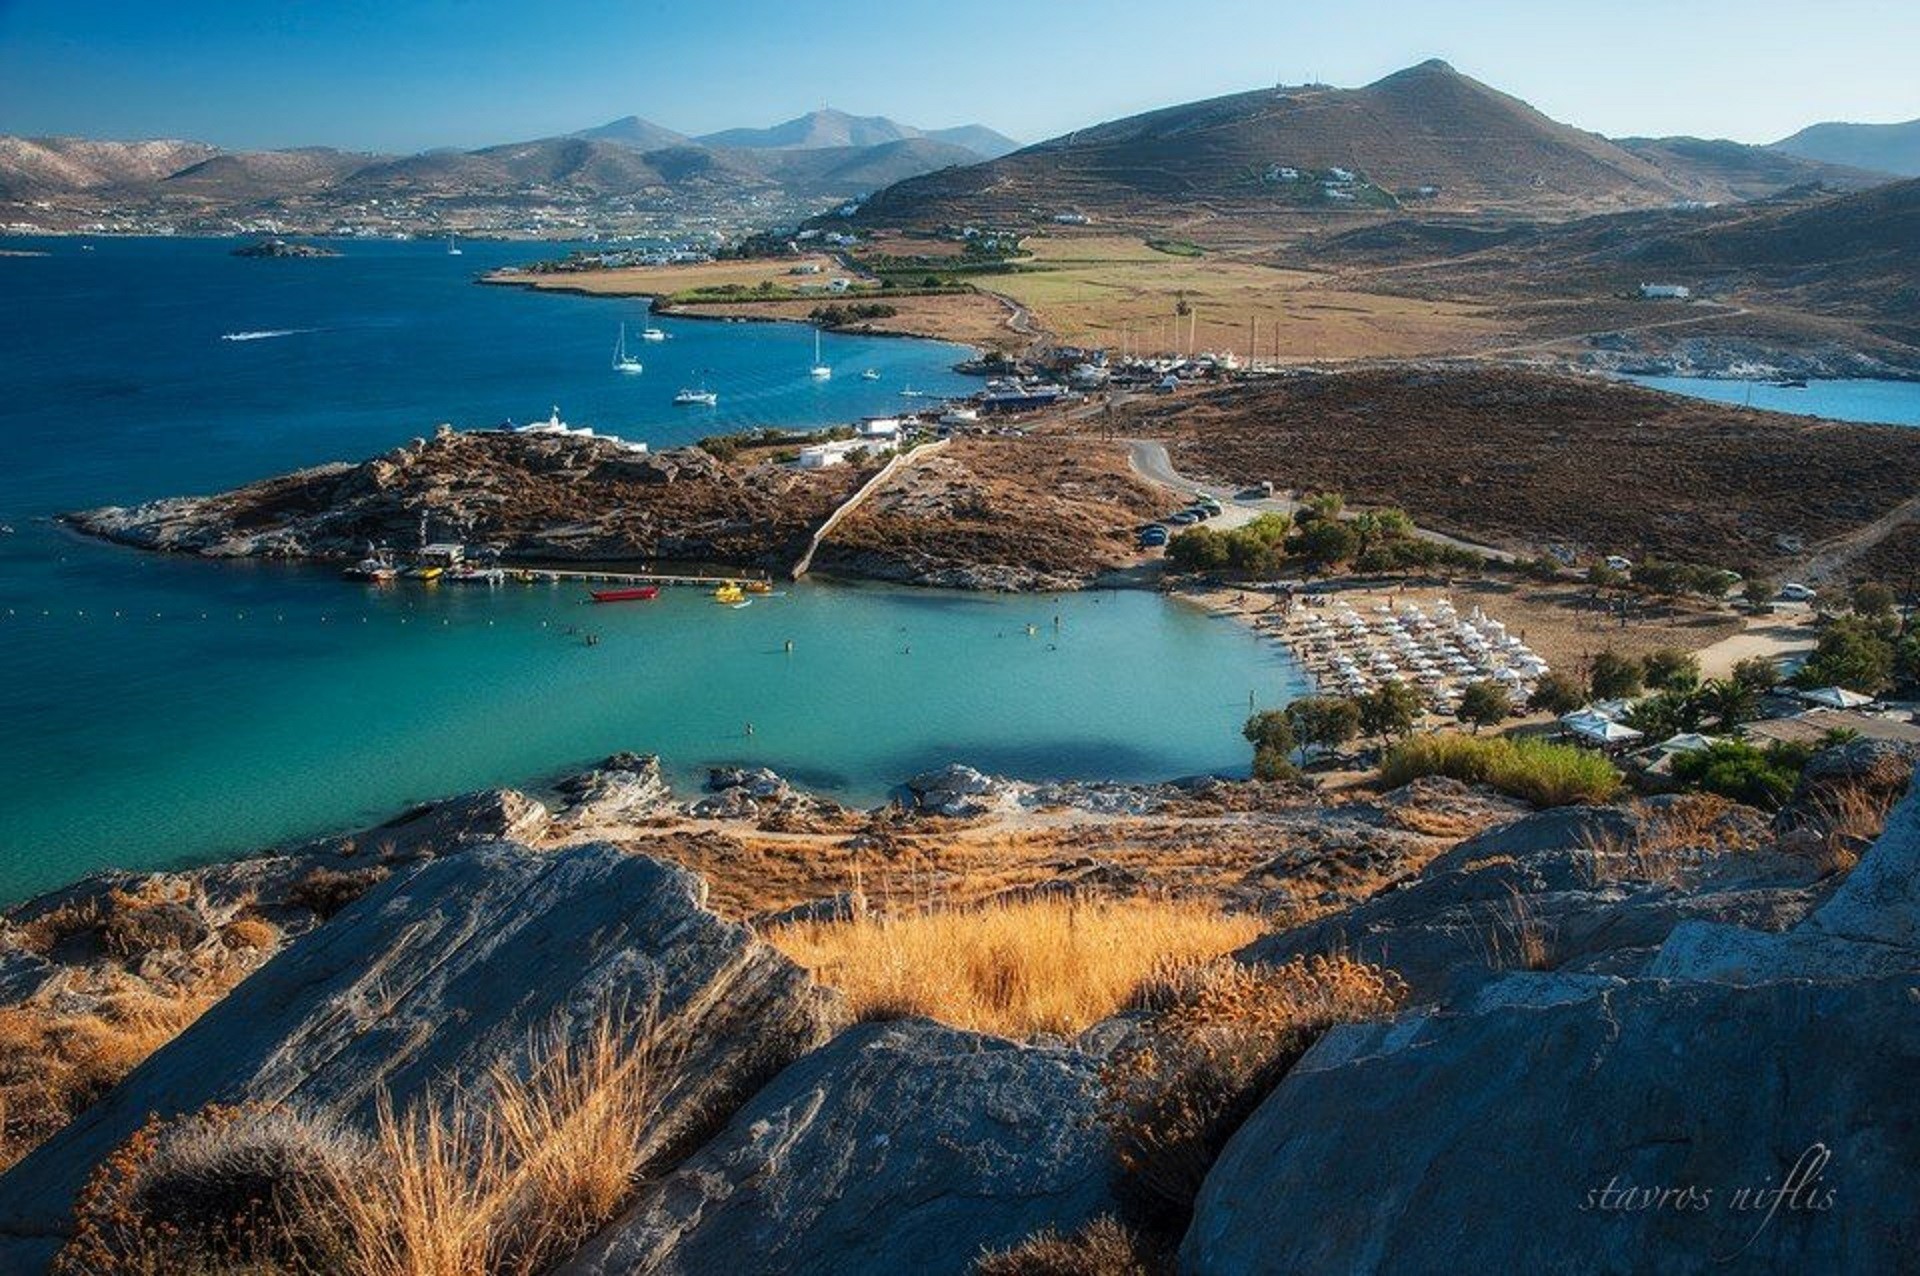 panorama półwyspu oblanego niebieskimi wodami z brązowymi wzniesieniami i plażą z leżakami